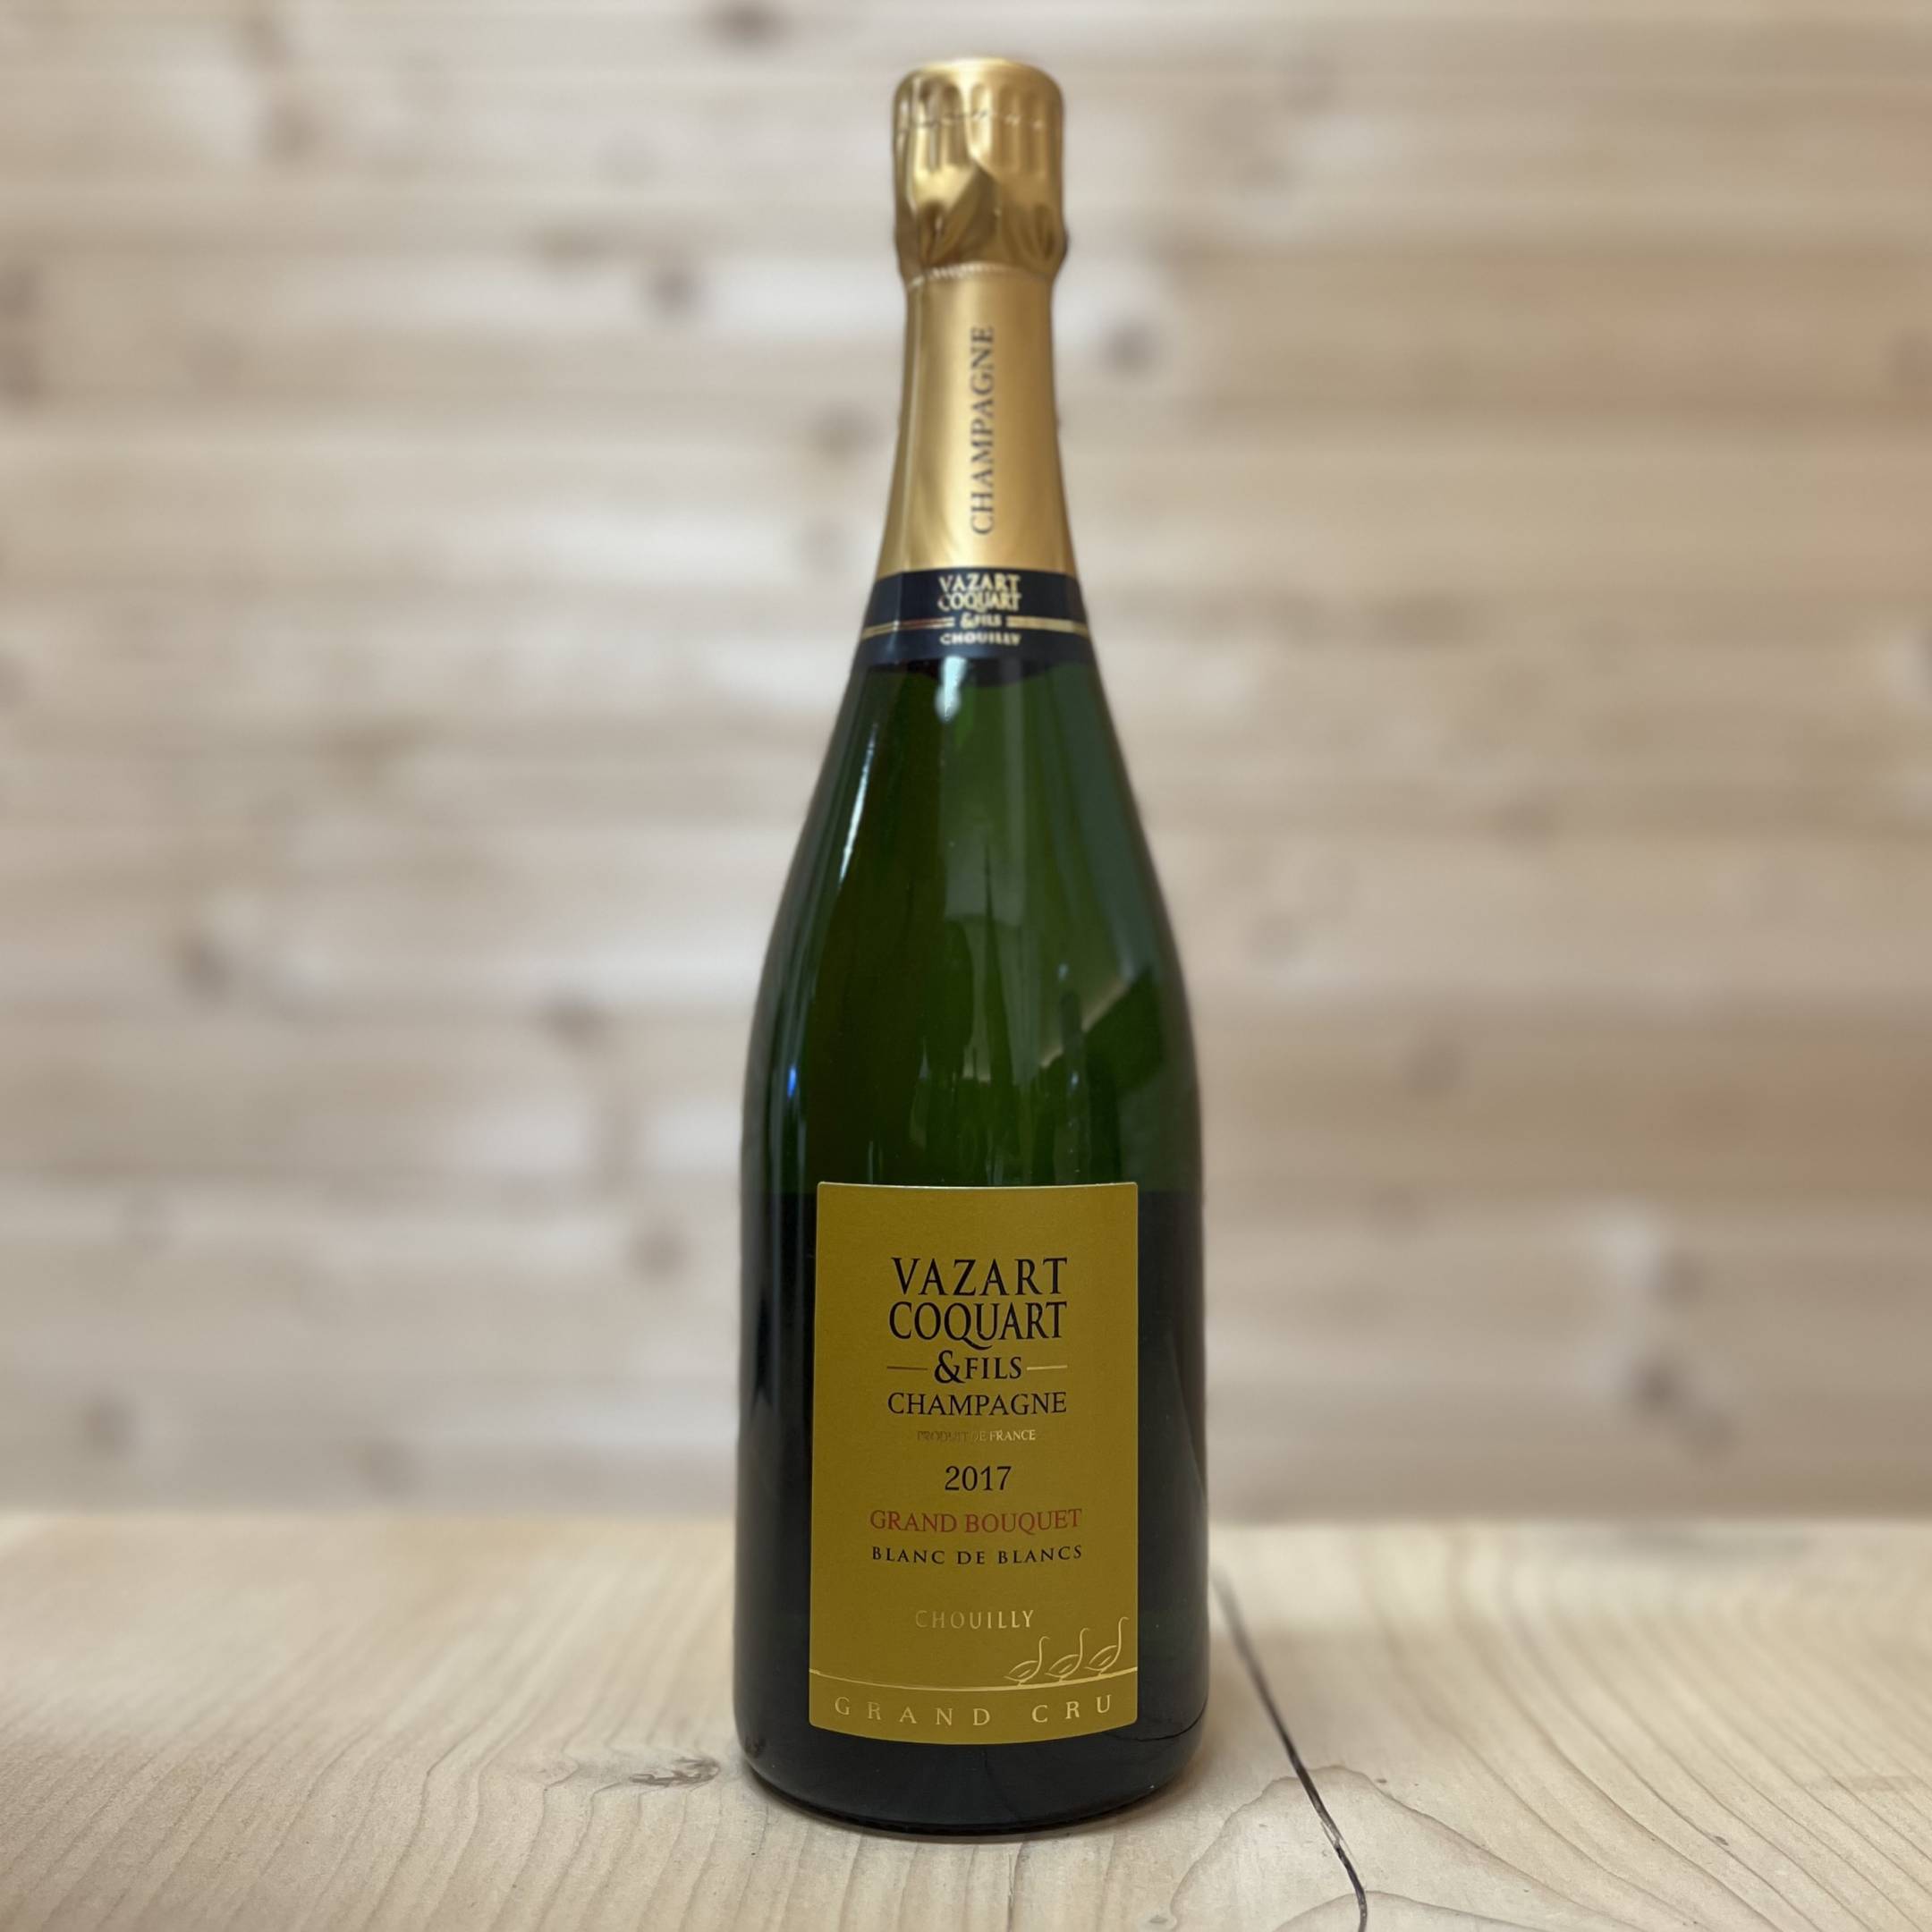 Vazart Coquart Champagne Brut Blanc de Blancs Grand Cru 'Grand Bouquet'  2016